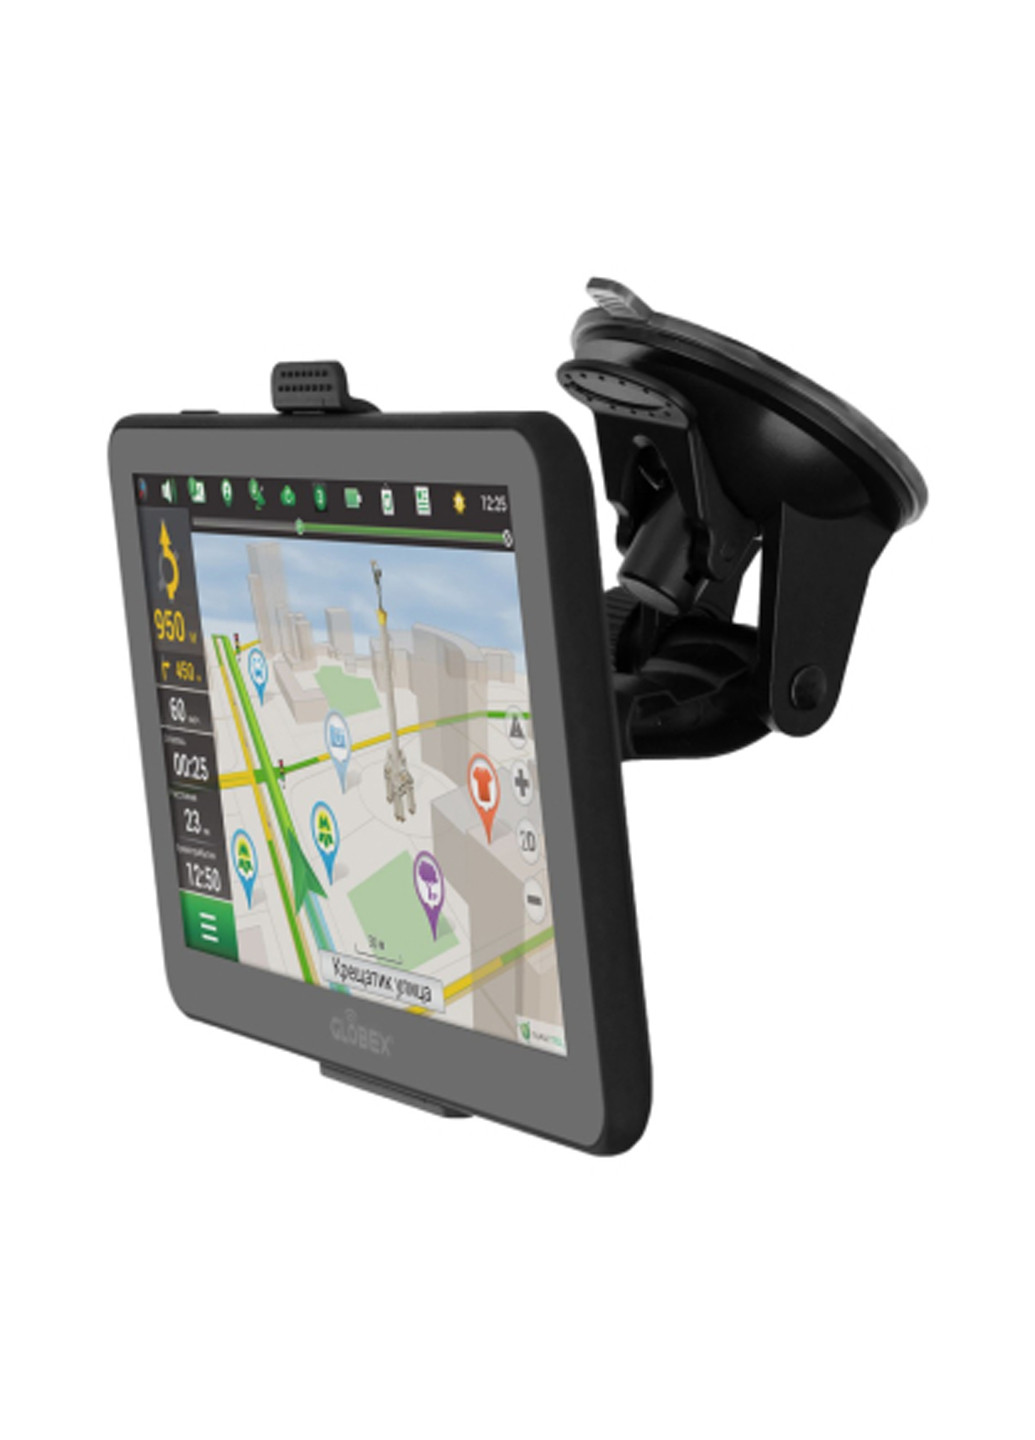 Автомобільний GPS навігатор Globex ge711 + navitel (133781342)